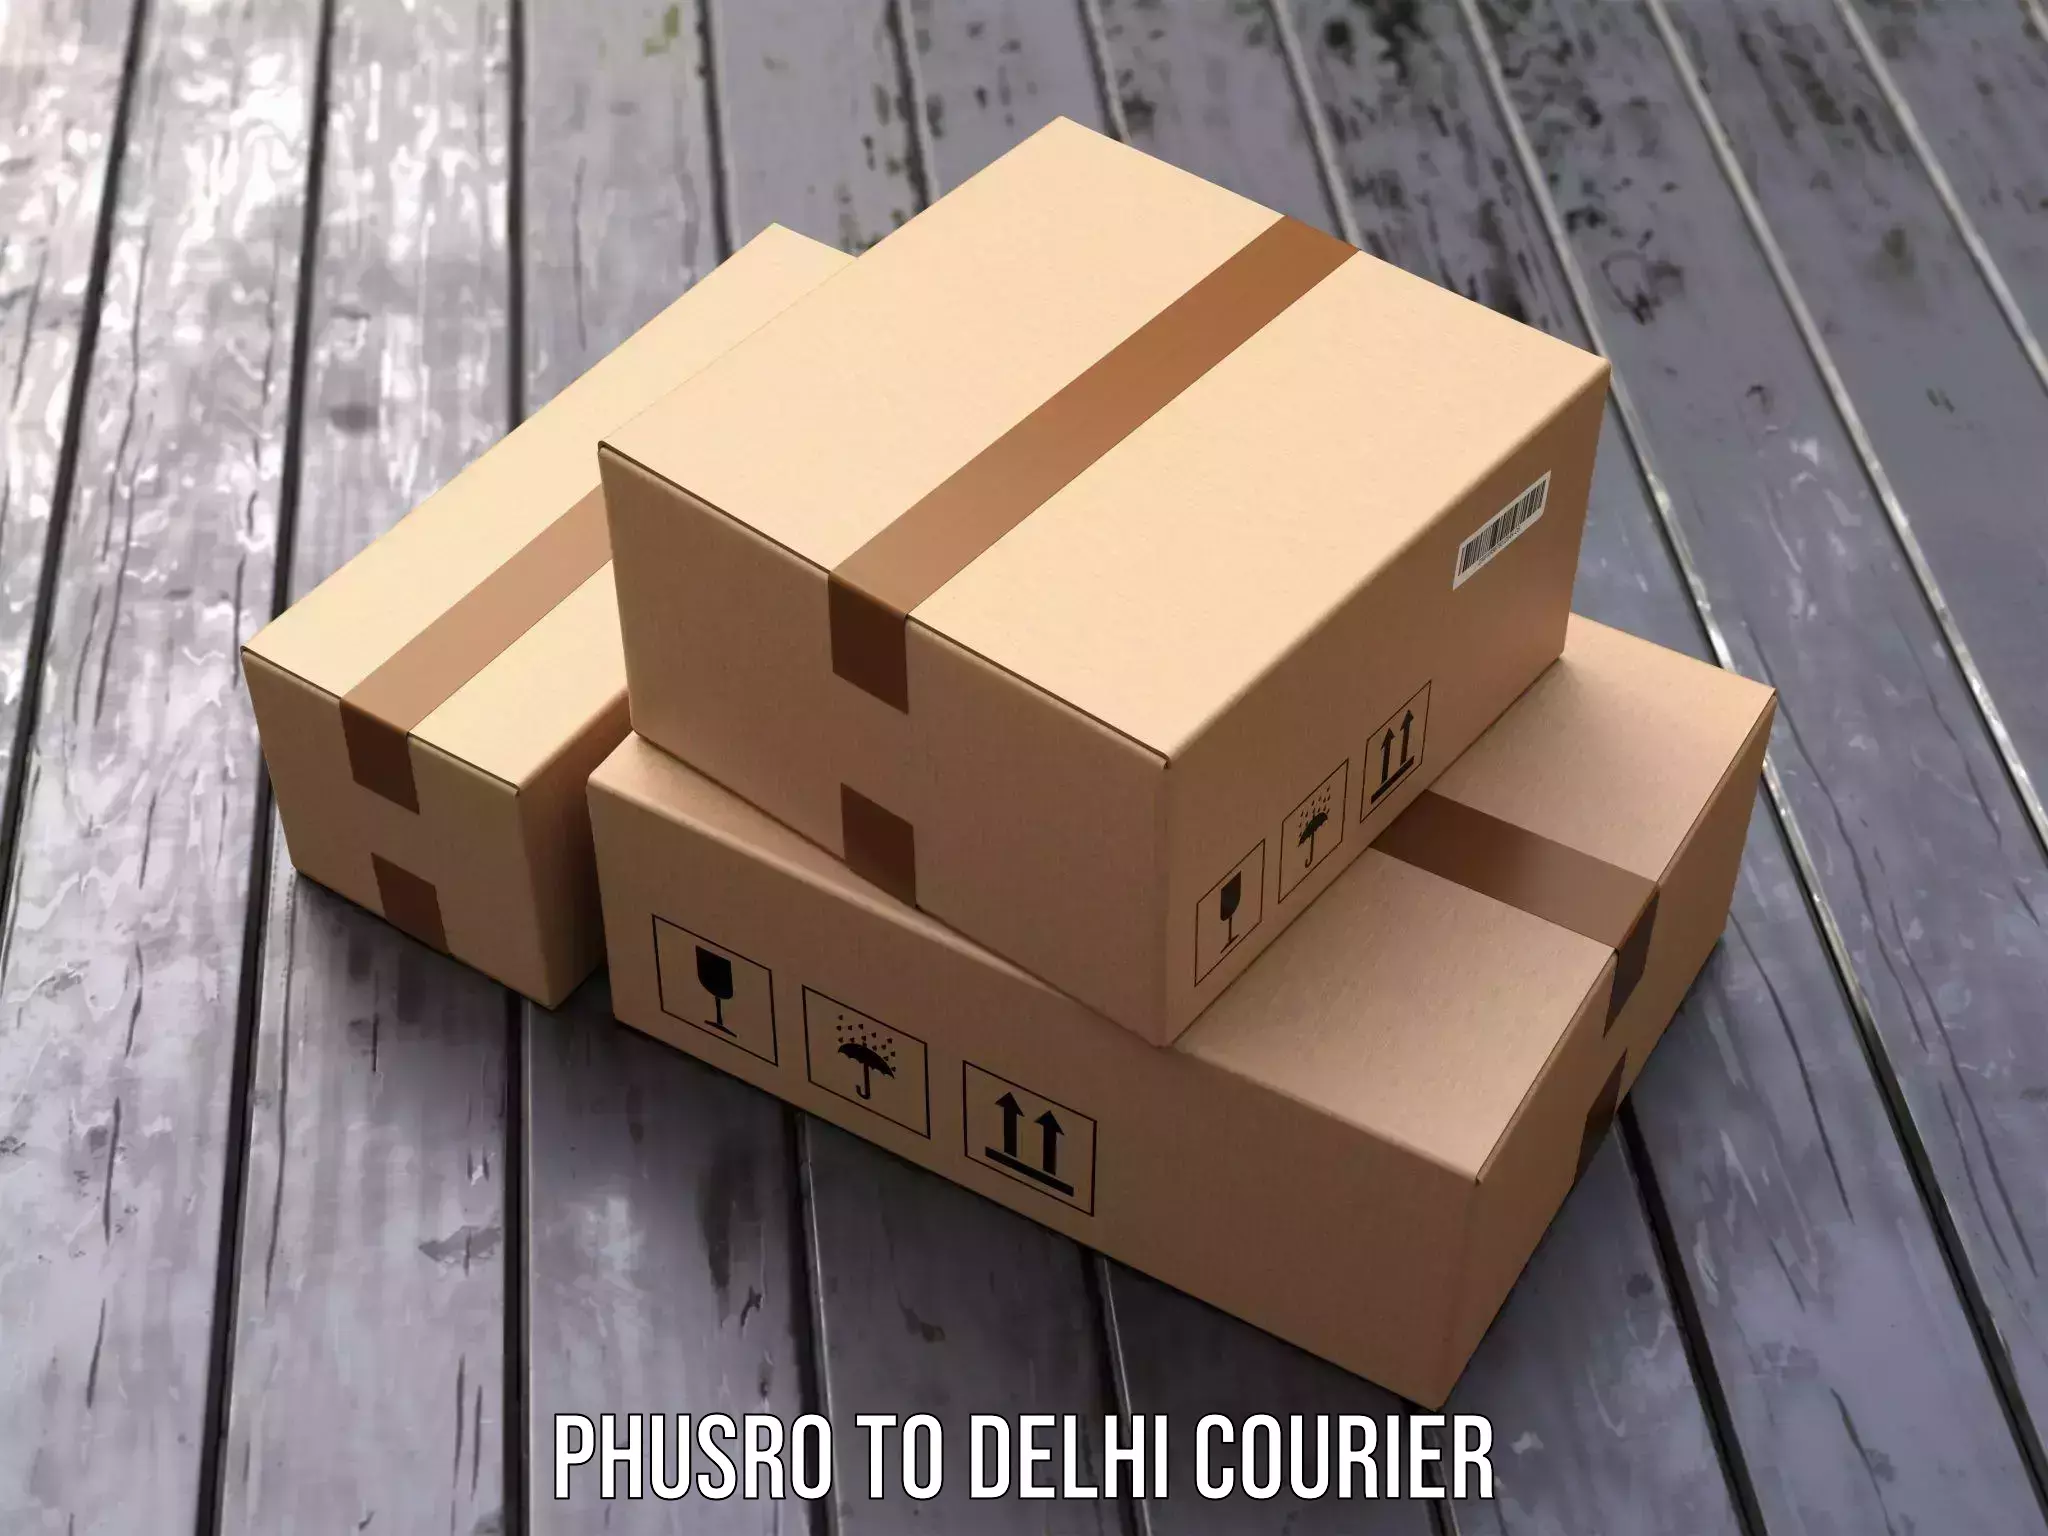 Courier insurance Phusro to Jawaharlal Nehru University New Delhi